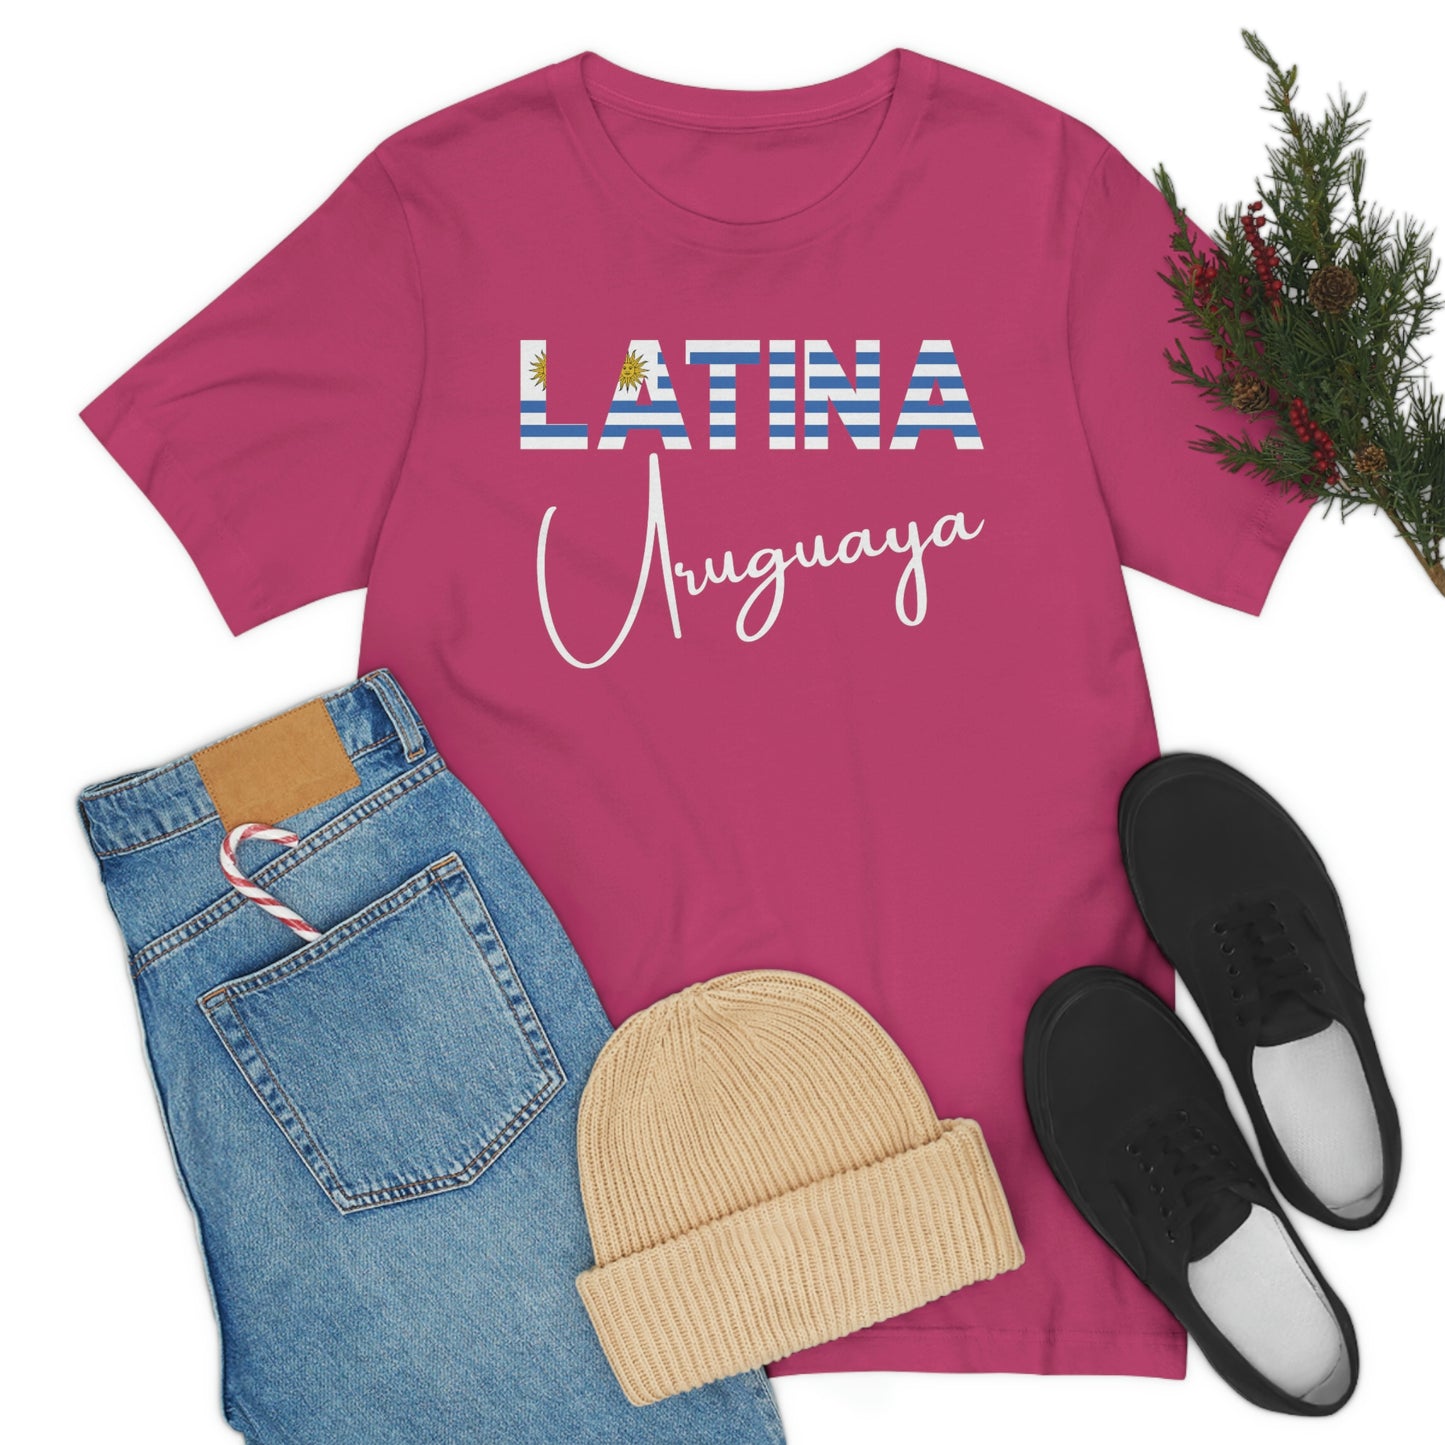 Latina Uruguaya, Shirt